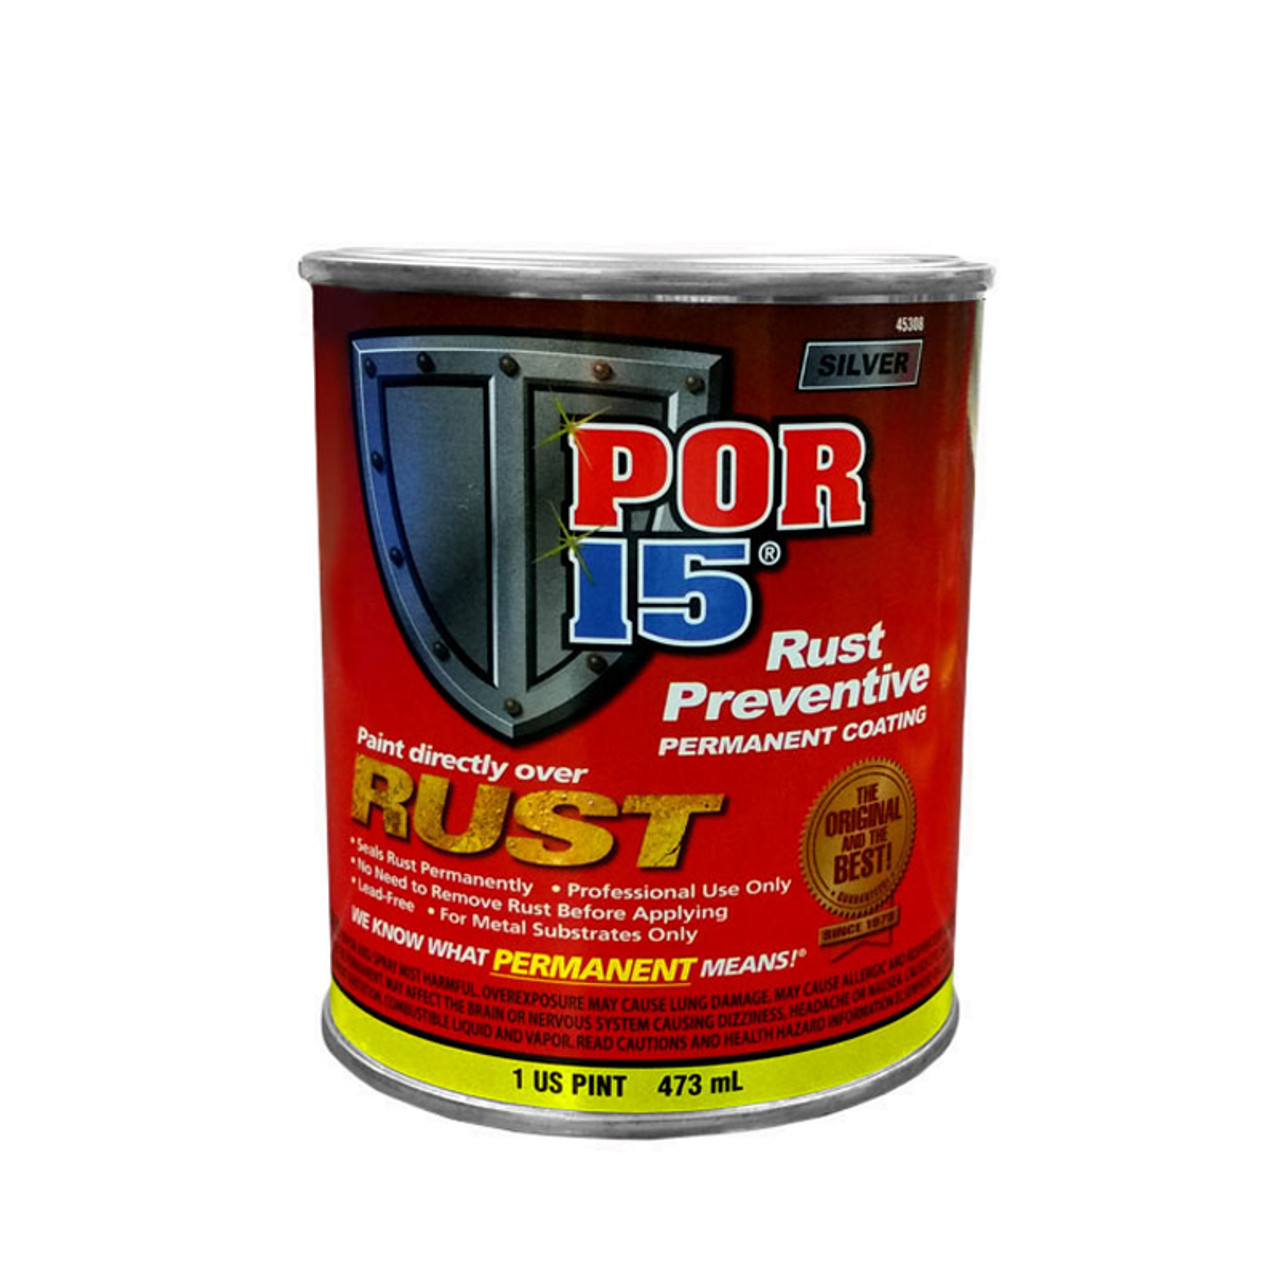 POR15 Silver Rust Preventive Pint (473ml)